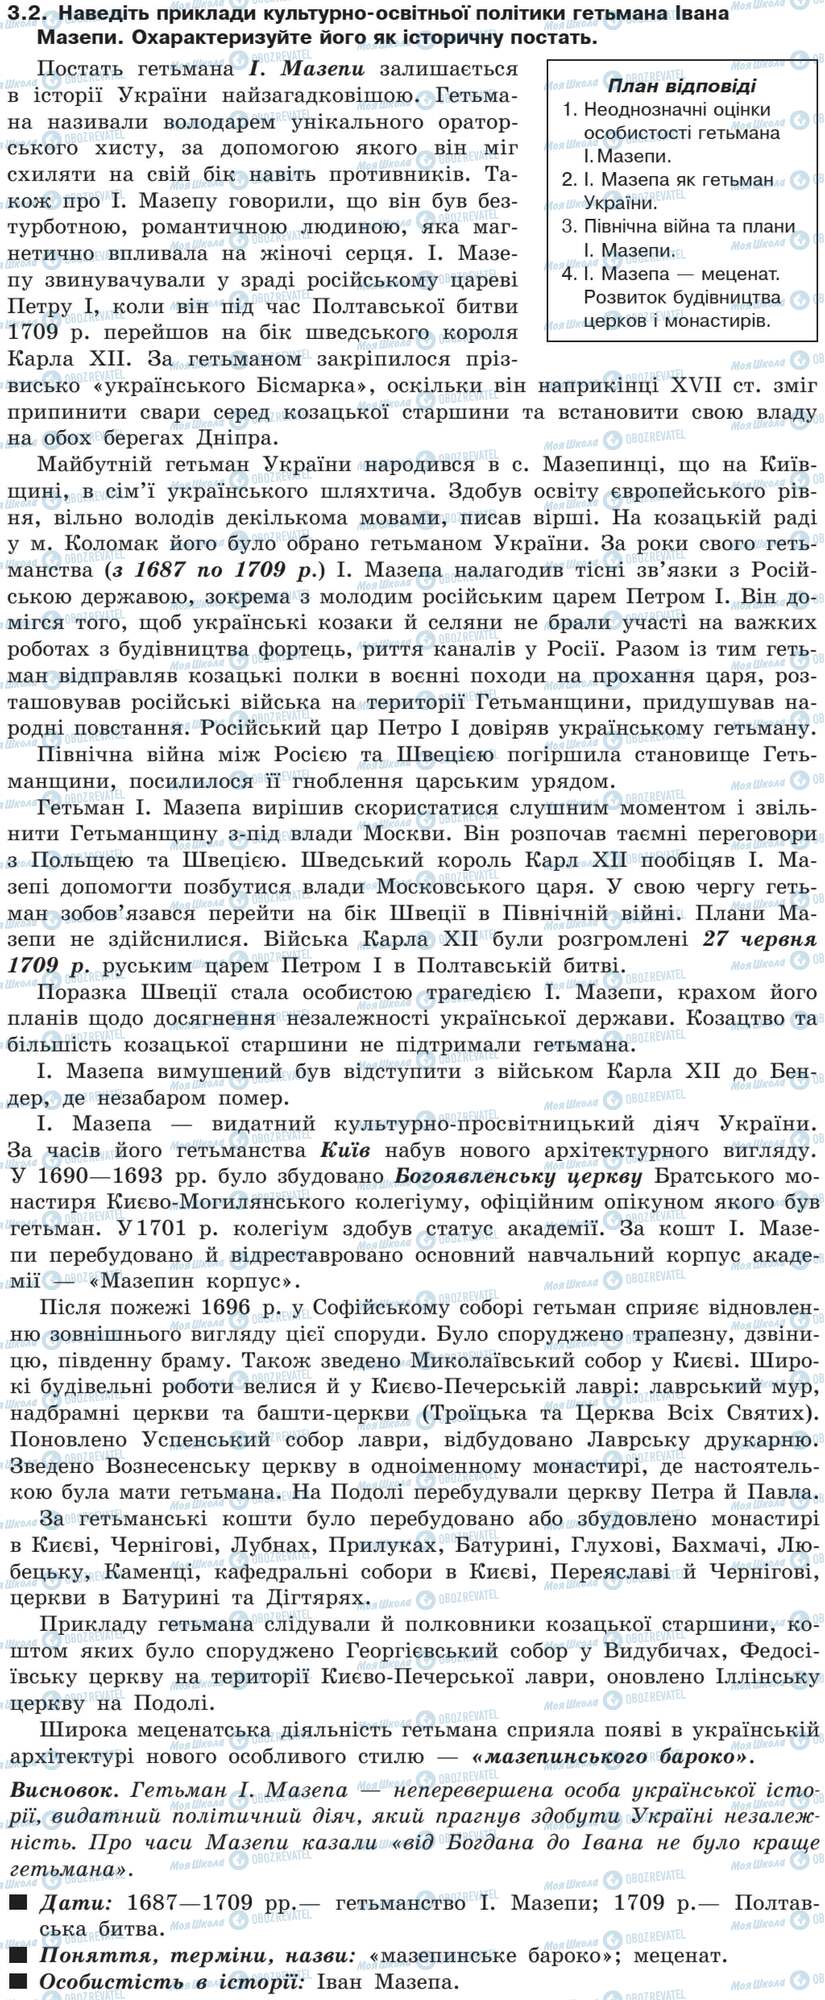 ДПА Історія України 9 клас сторінка 3.2